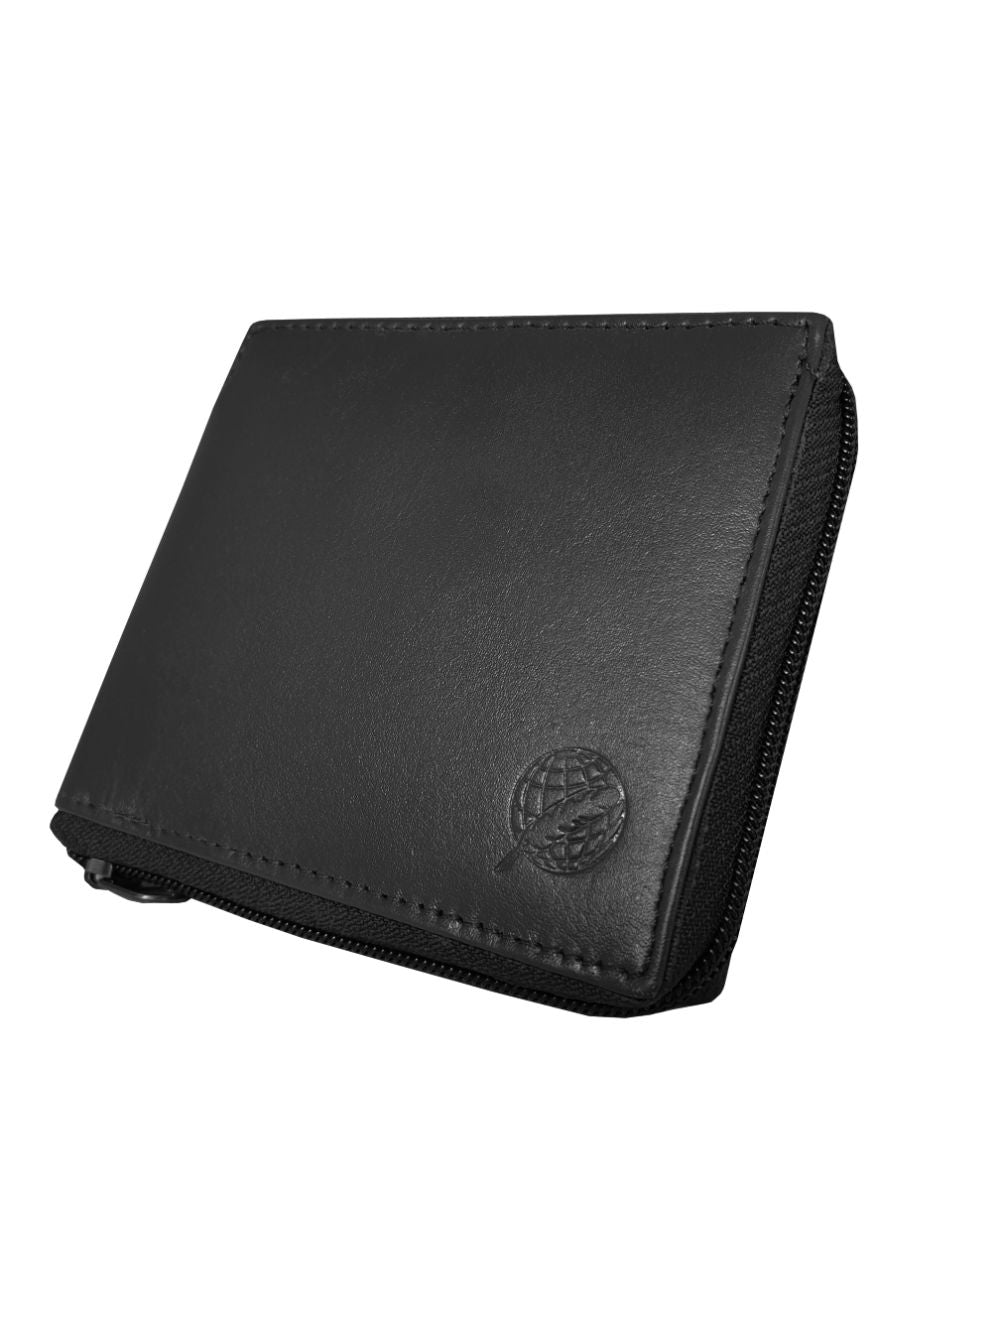 Roamlite Mens Zip-around Black Leather Wallet RL184 side